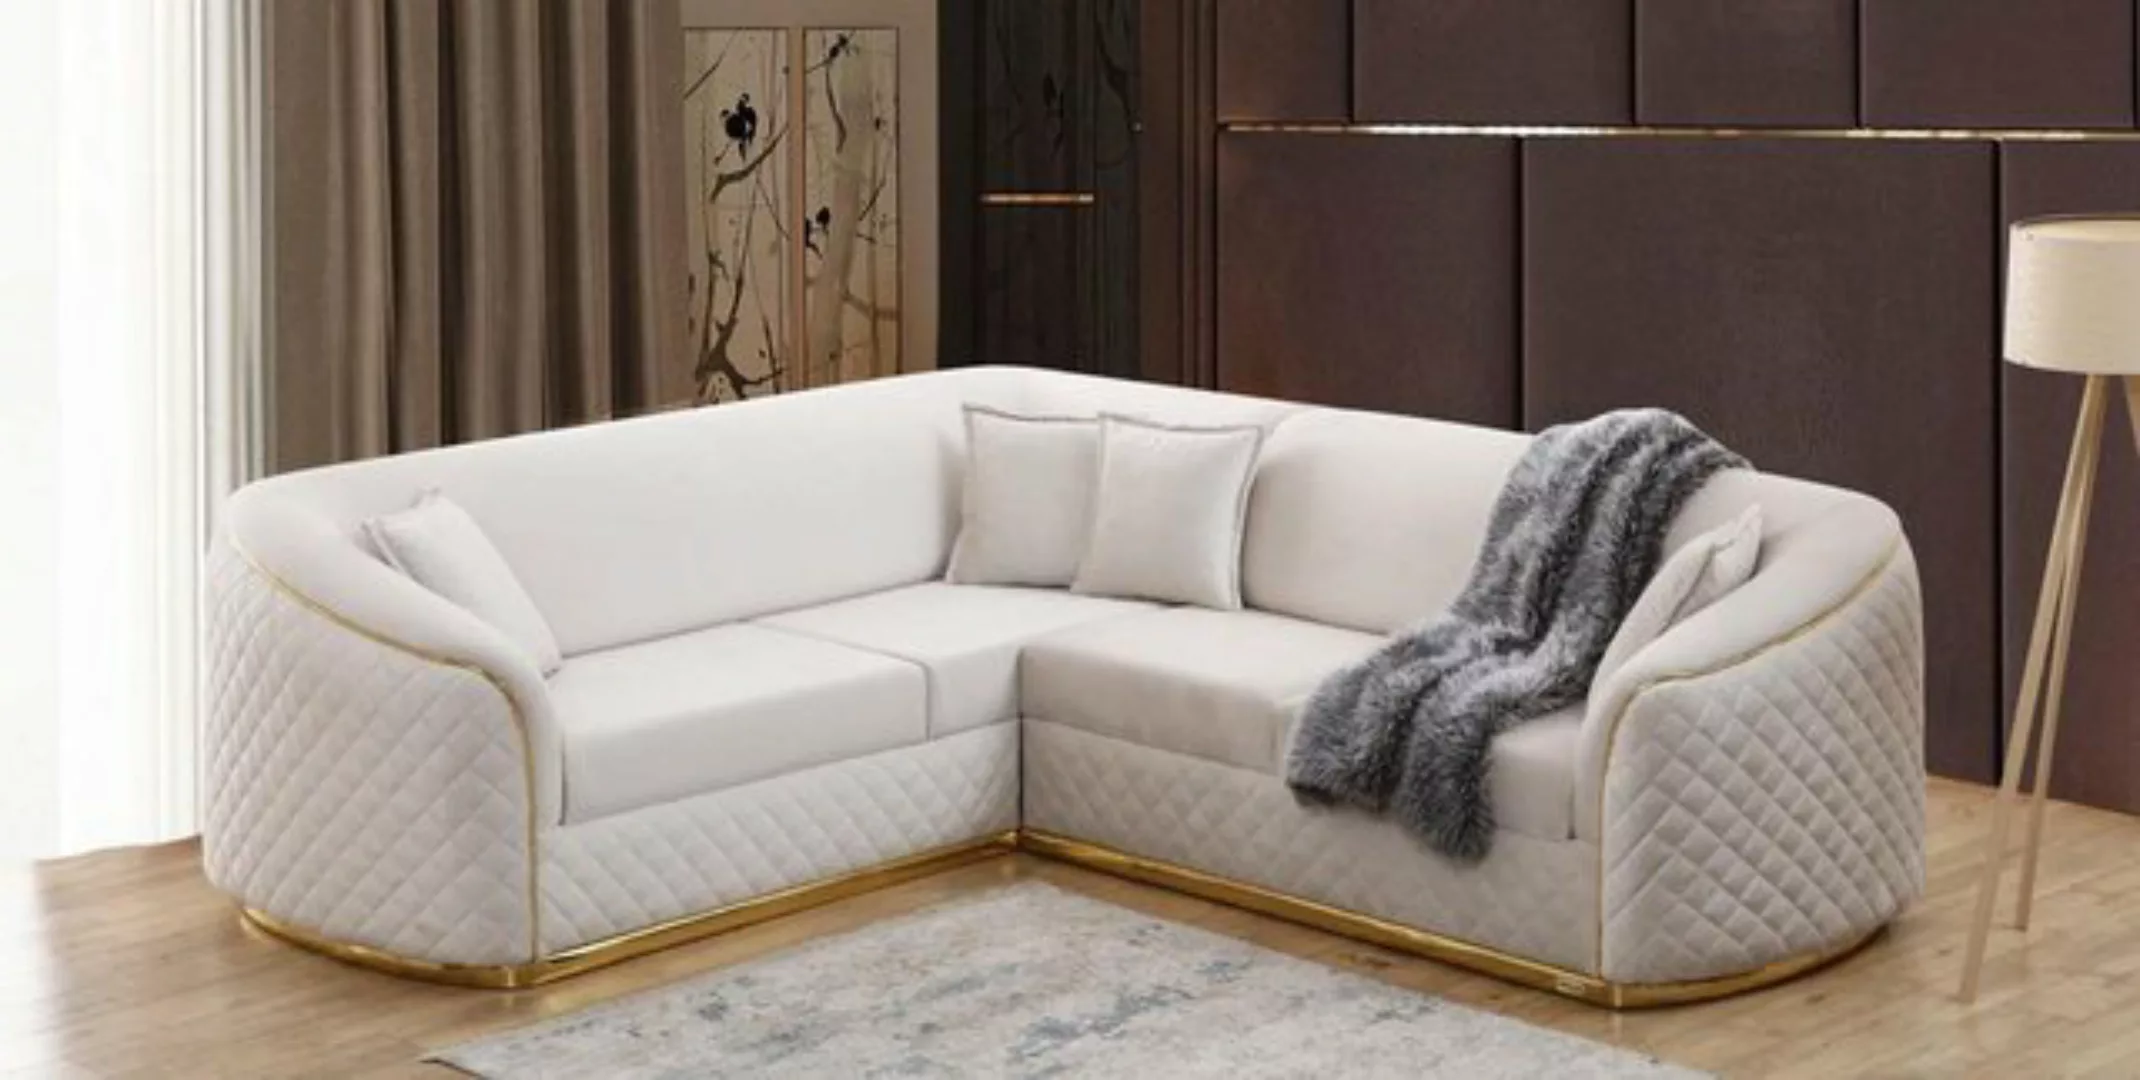 JVmoebel Ecksofa Design Eckcouch Wohnzimmer Eckgarnitur Sofa Couch Textil E günstig online kaufen